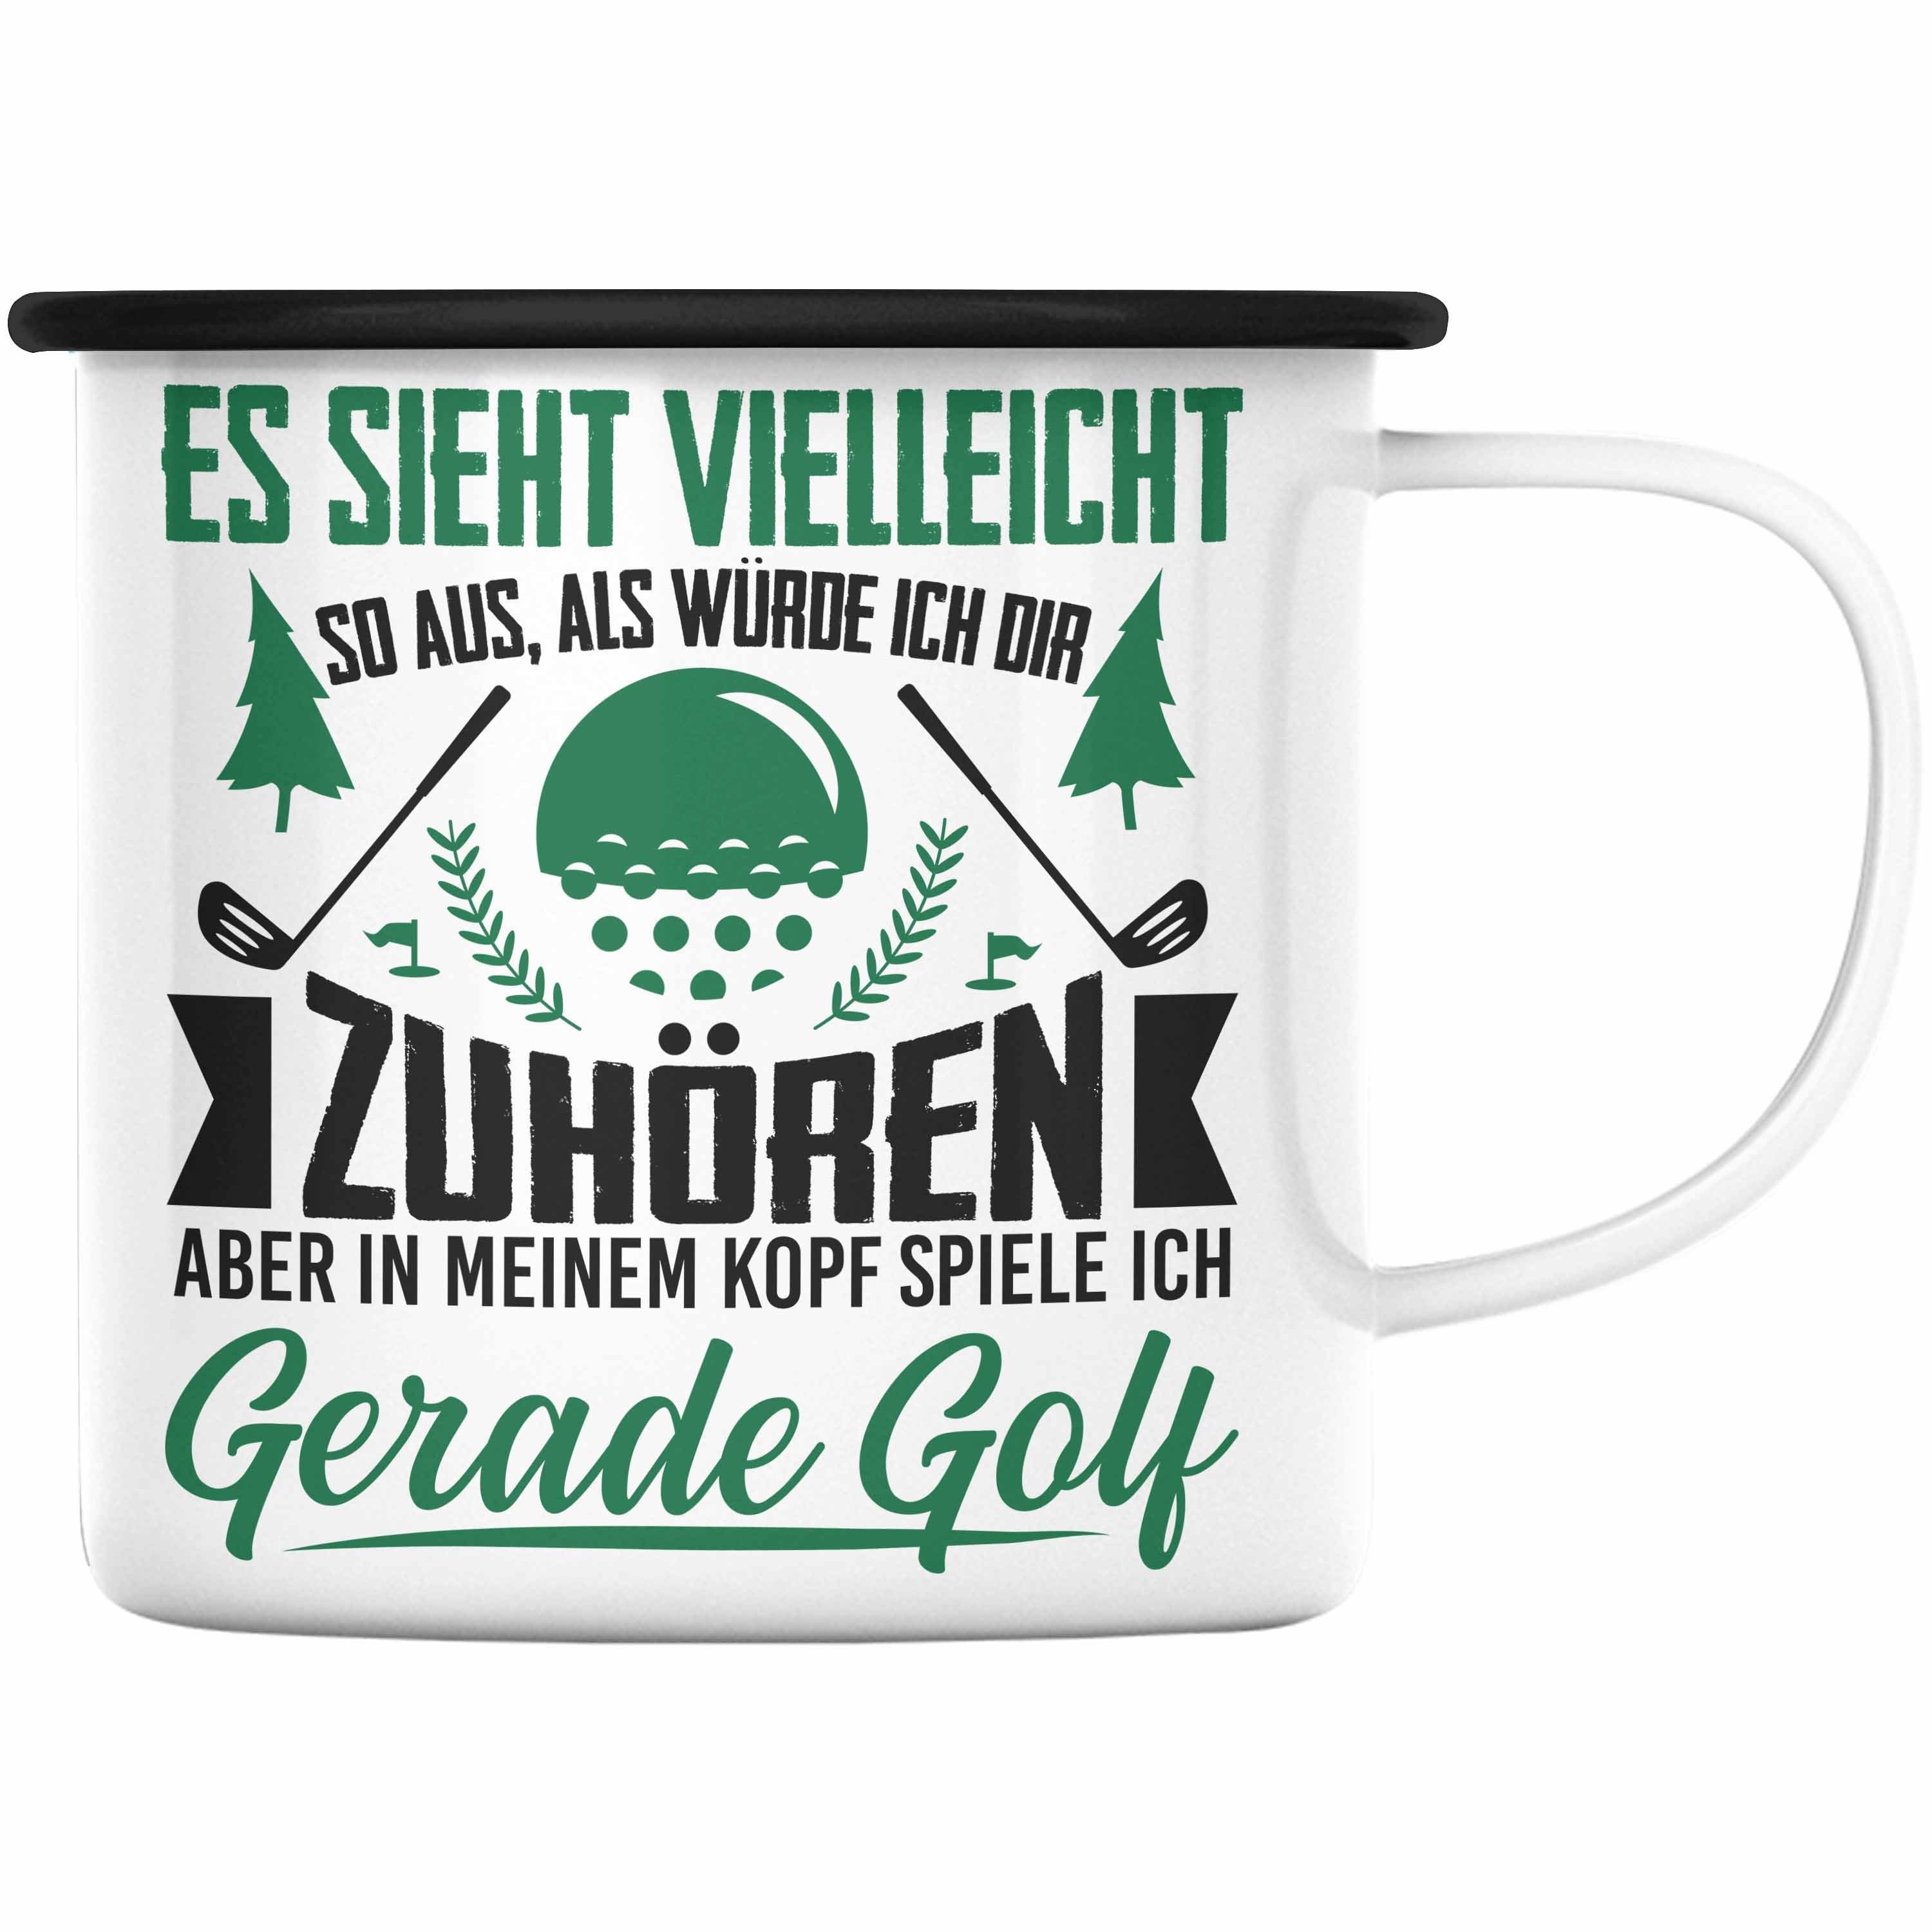 Trendation Thermotasse Trendation - Golfer Geschenk Golf Emaille Tasse mit Spruch - KaffeeEmaille Tasse für Golfer Geschenkidee Schwarz